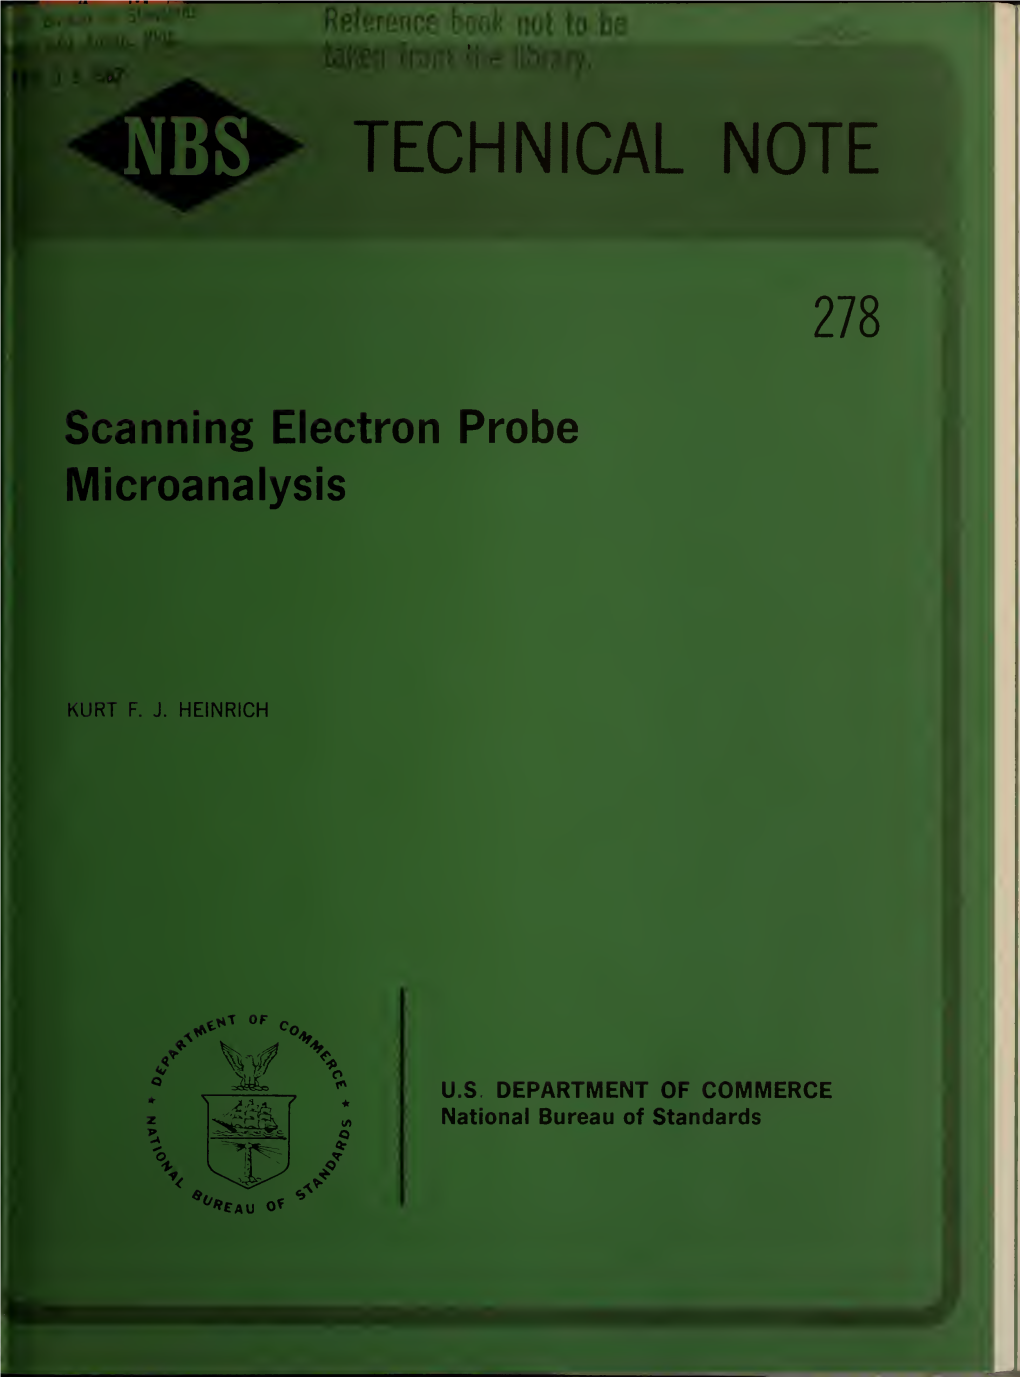 Scanning Electron Probe Microanalysis